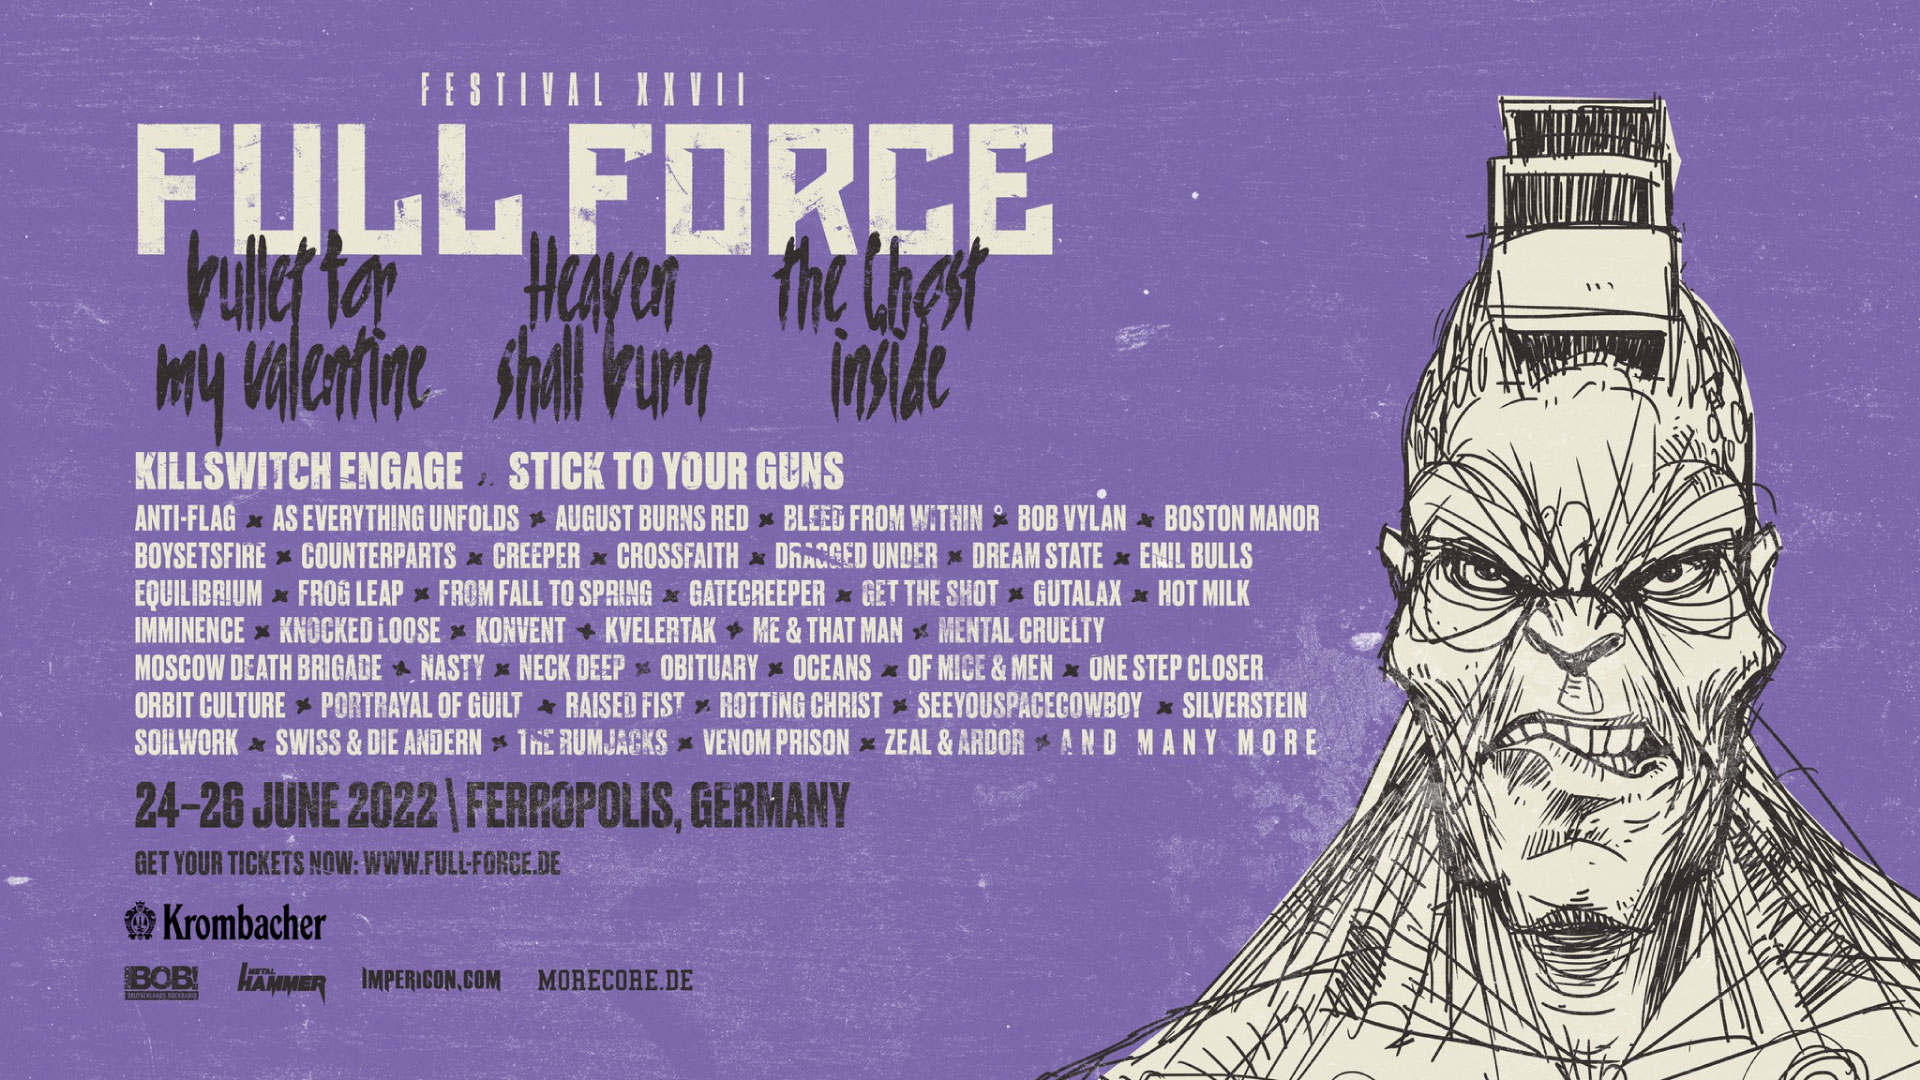 MoreCore Adventskalender Full Force Festival 2022